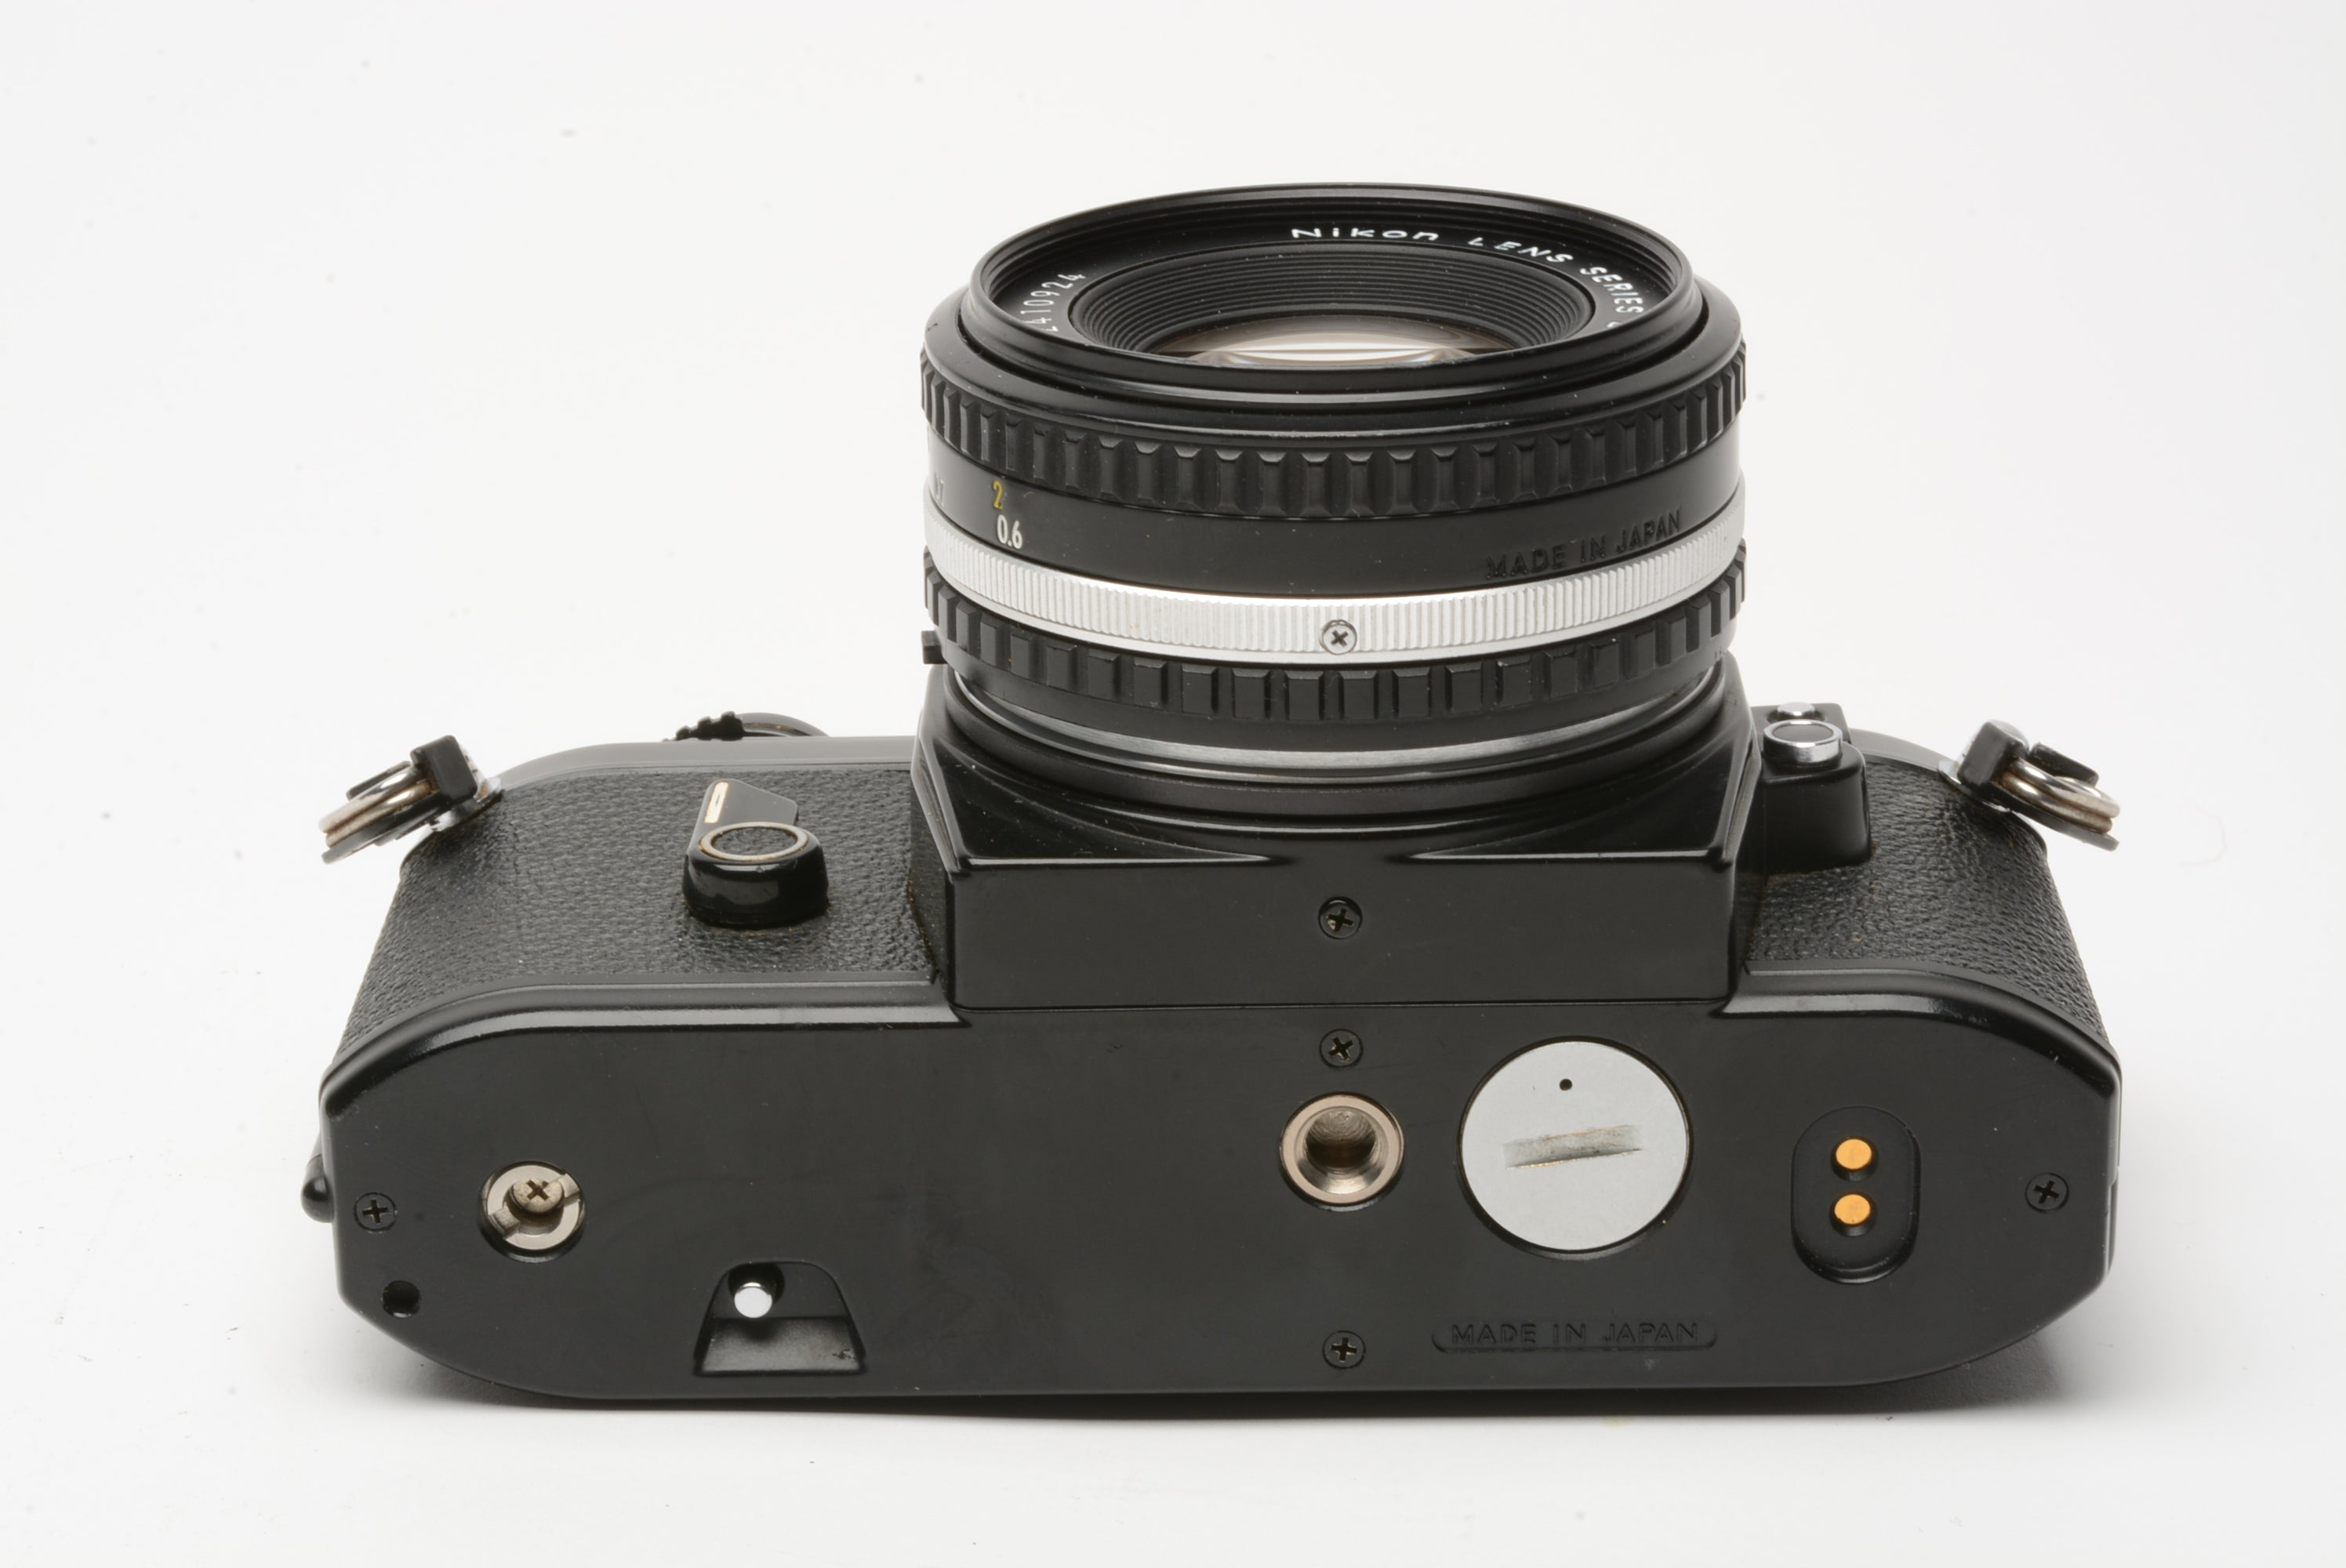 Nikon EM 35mm SLR w/Nikon Series E 50mm f1.8 lens, strap, cap, manual, new  seals